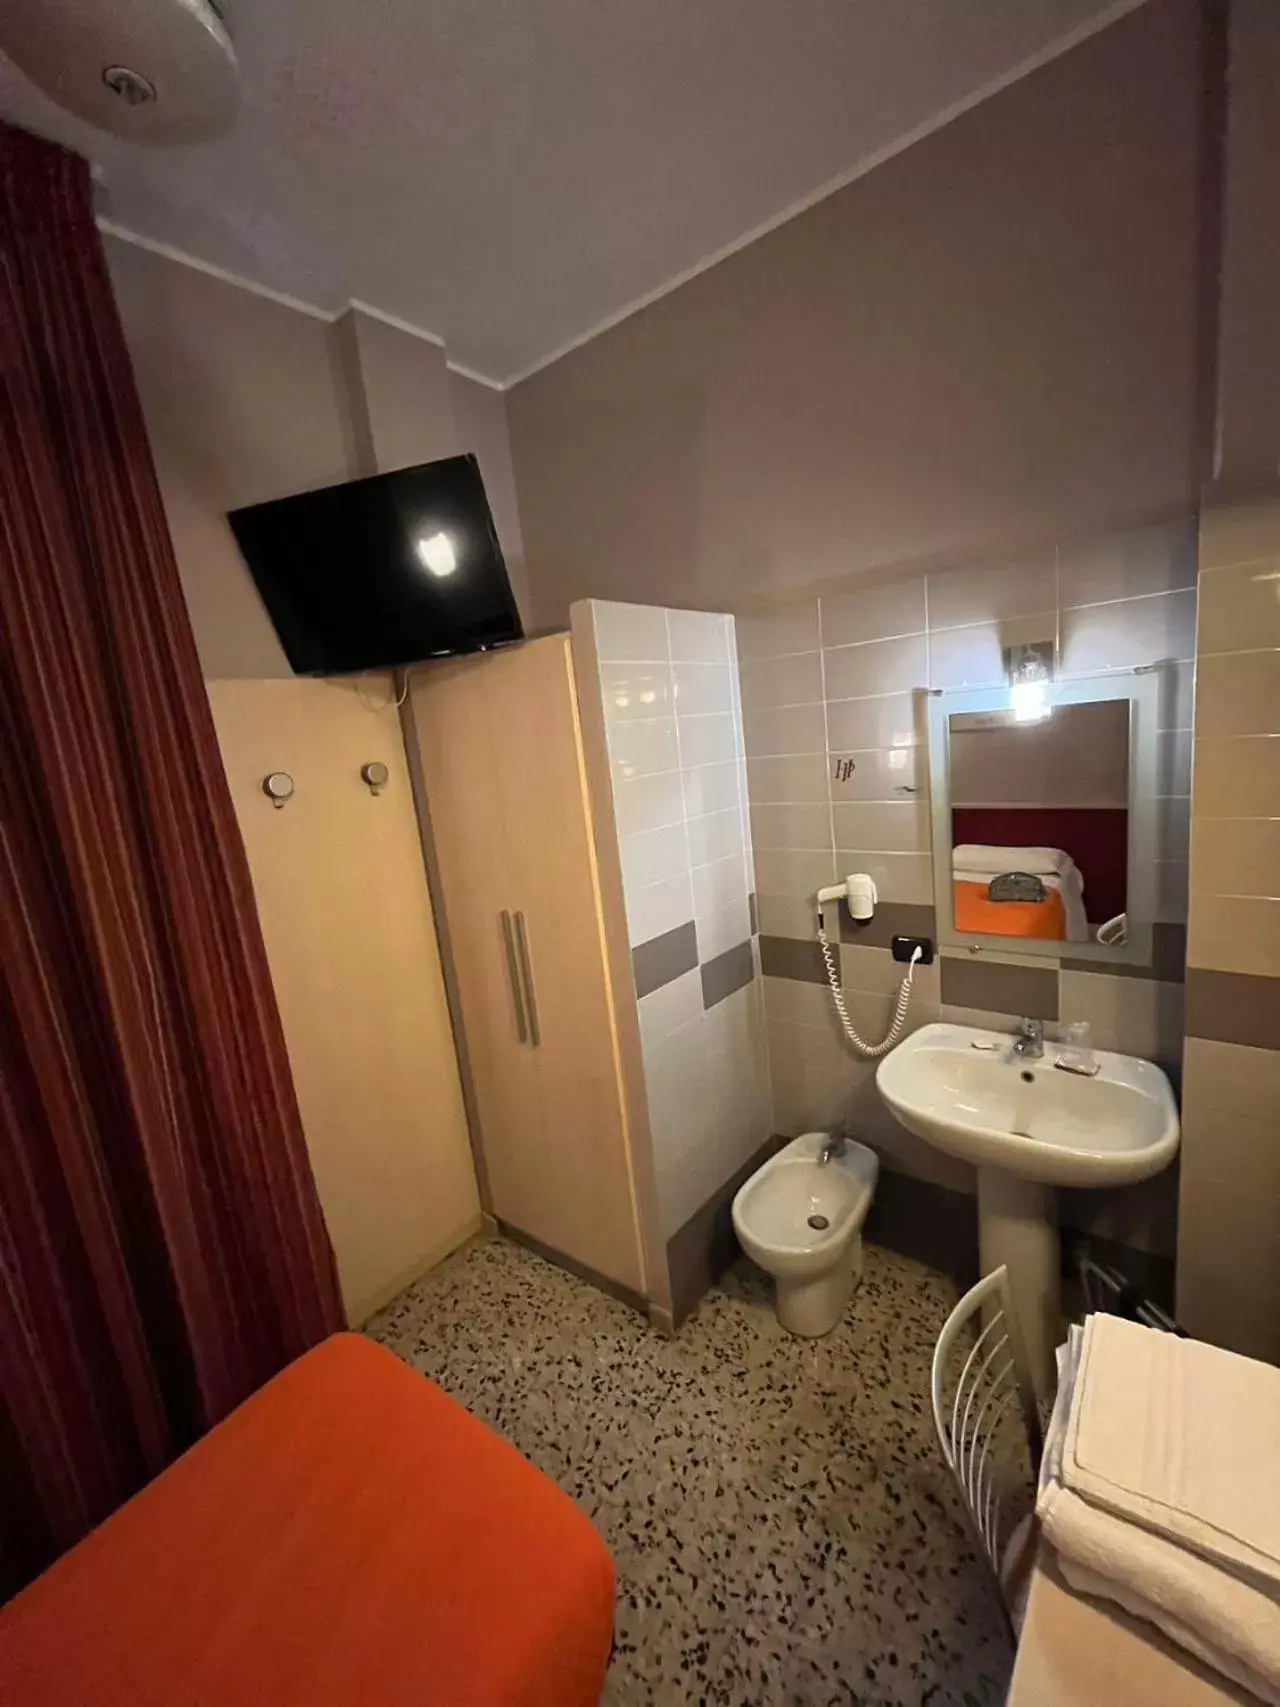 Bedroom, Bathroom in Hotel Parma